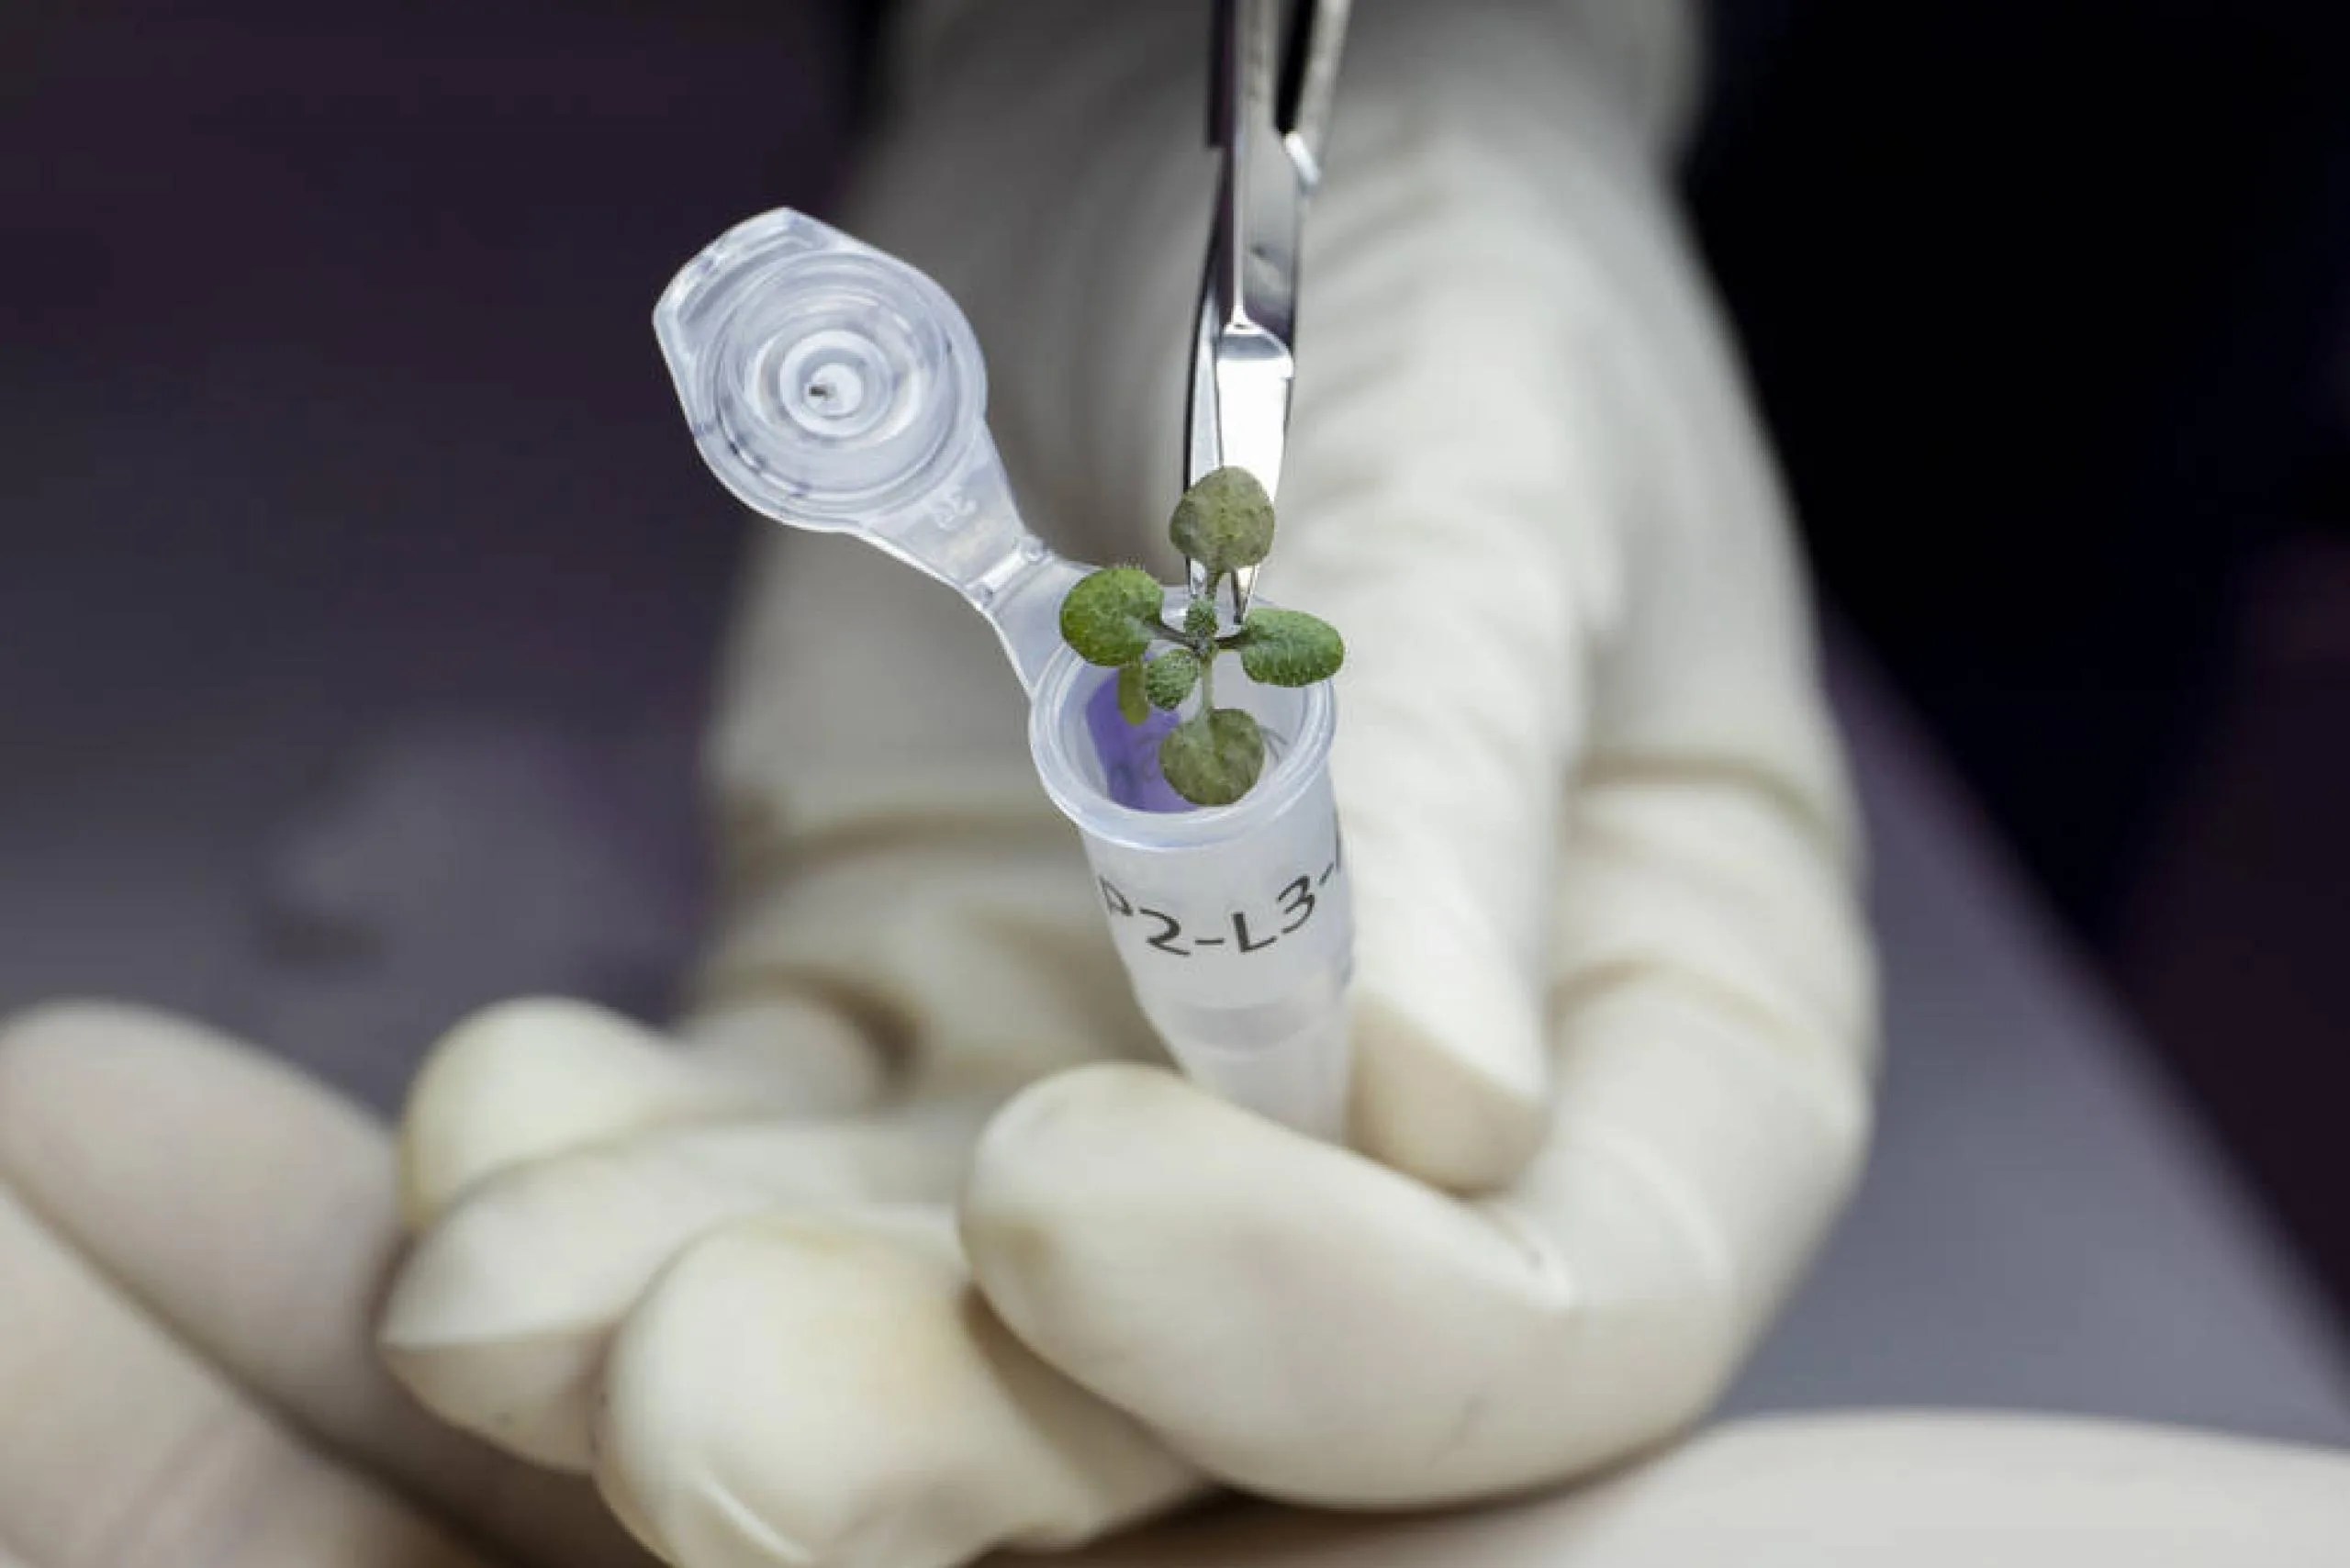 Colocación de una planta cultivada durante el experimento en un vial para su eventual análisis genético. Créditos: Foto de UF/IFAS por Tyler Jones